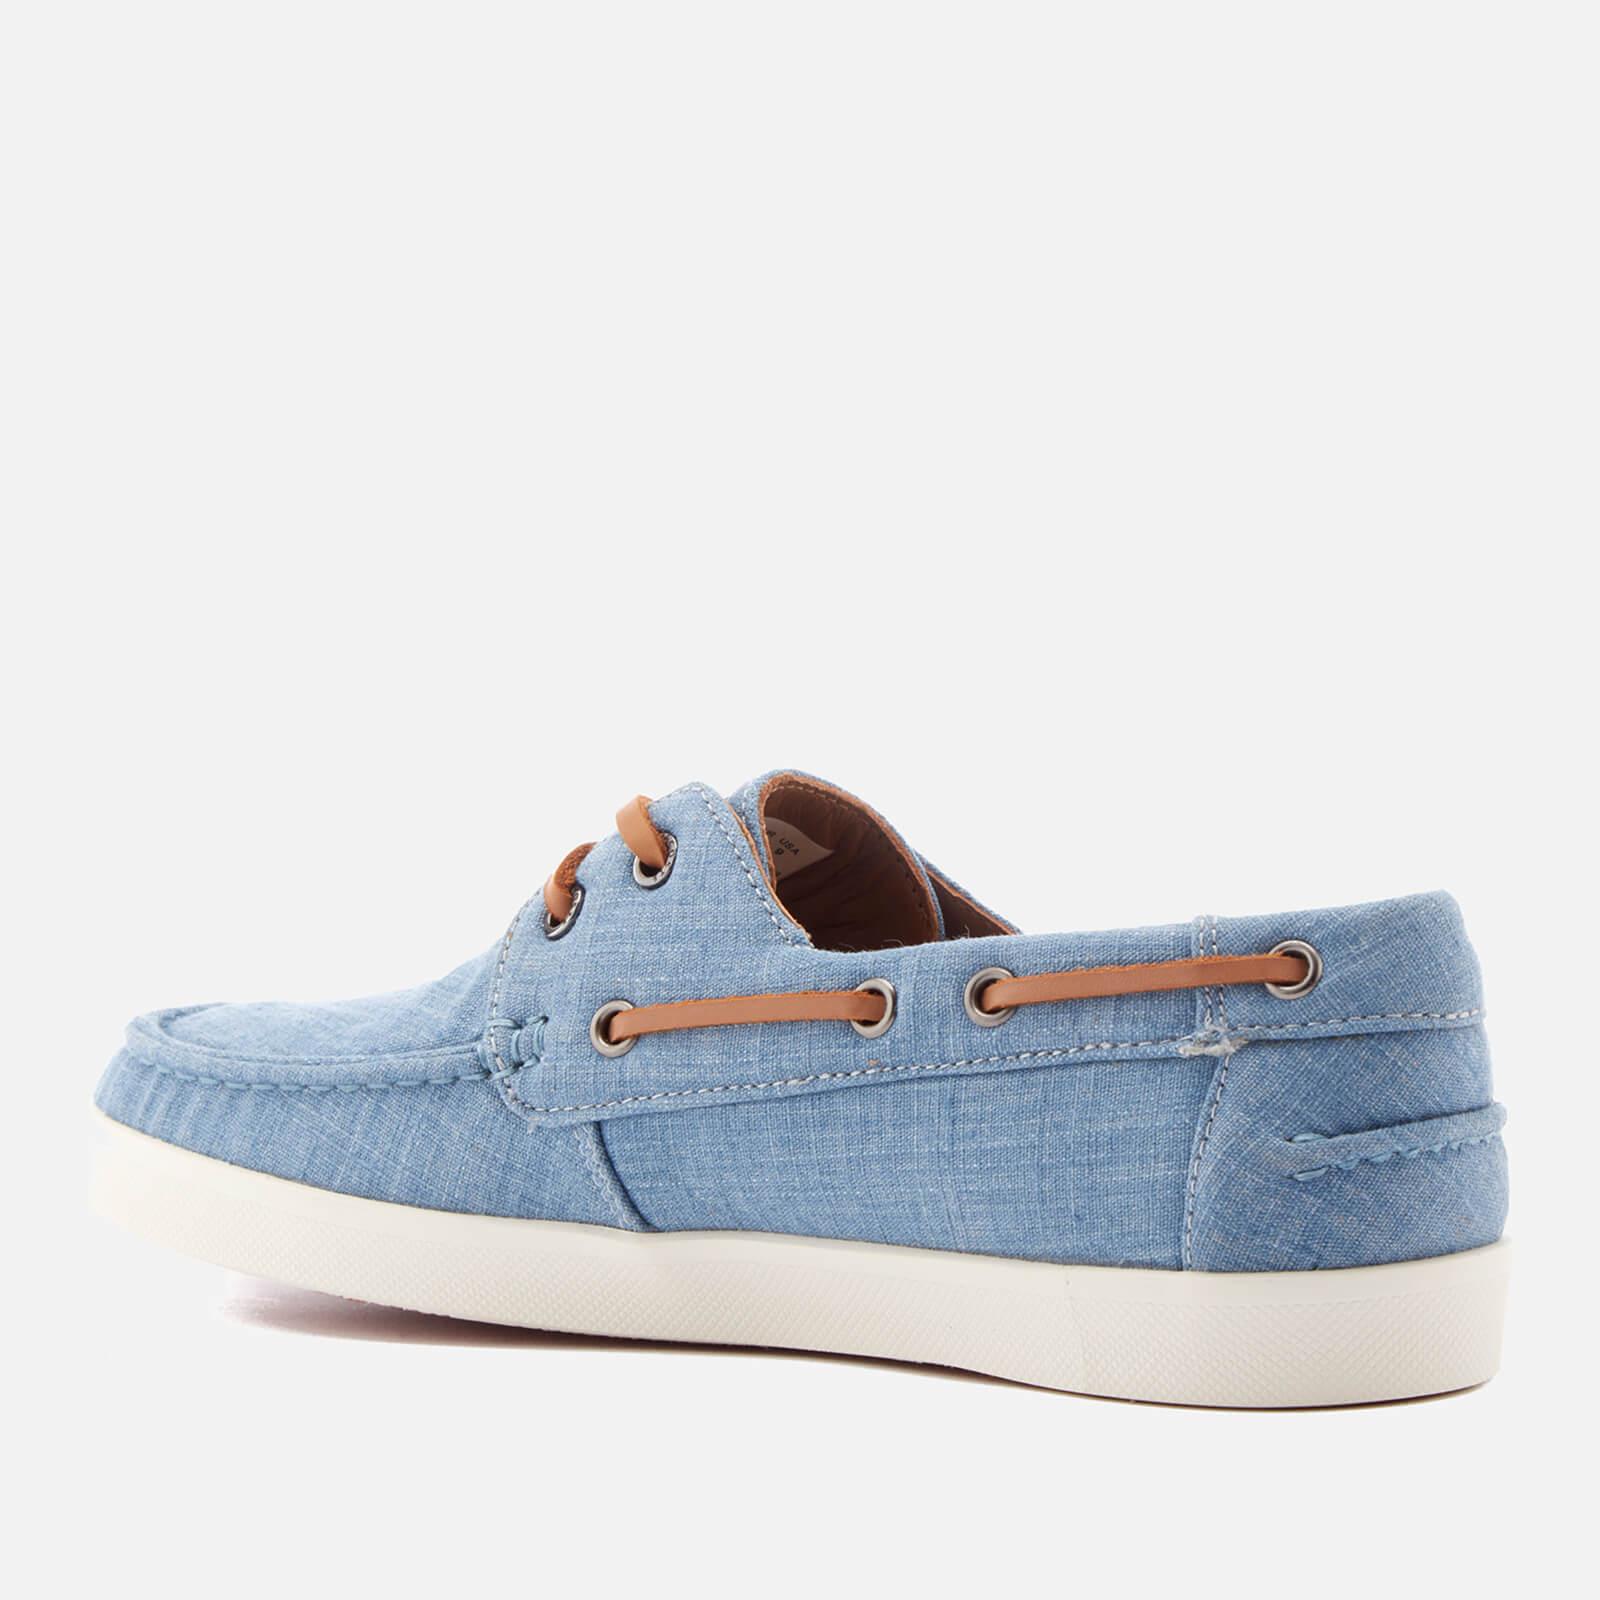 Lacoste Keellson Boat Shoes in Blue for Men - Lyst